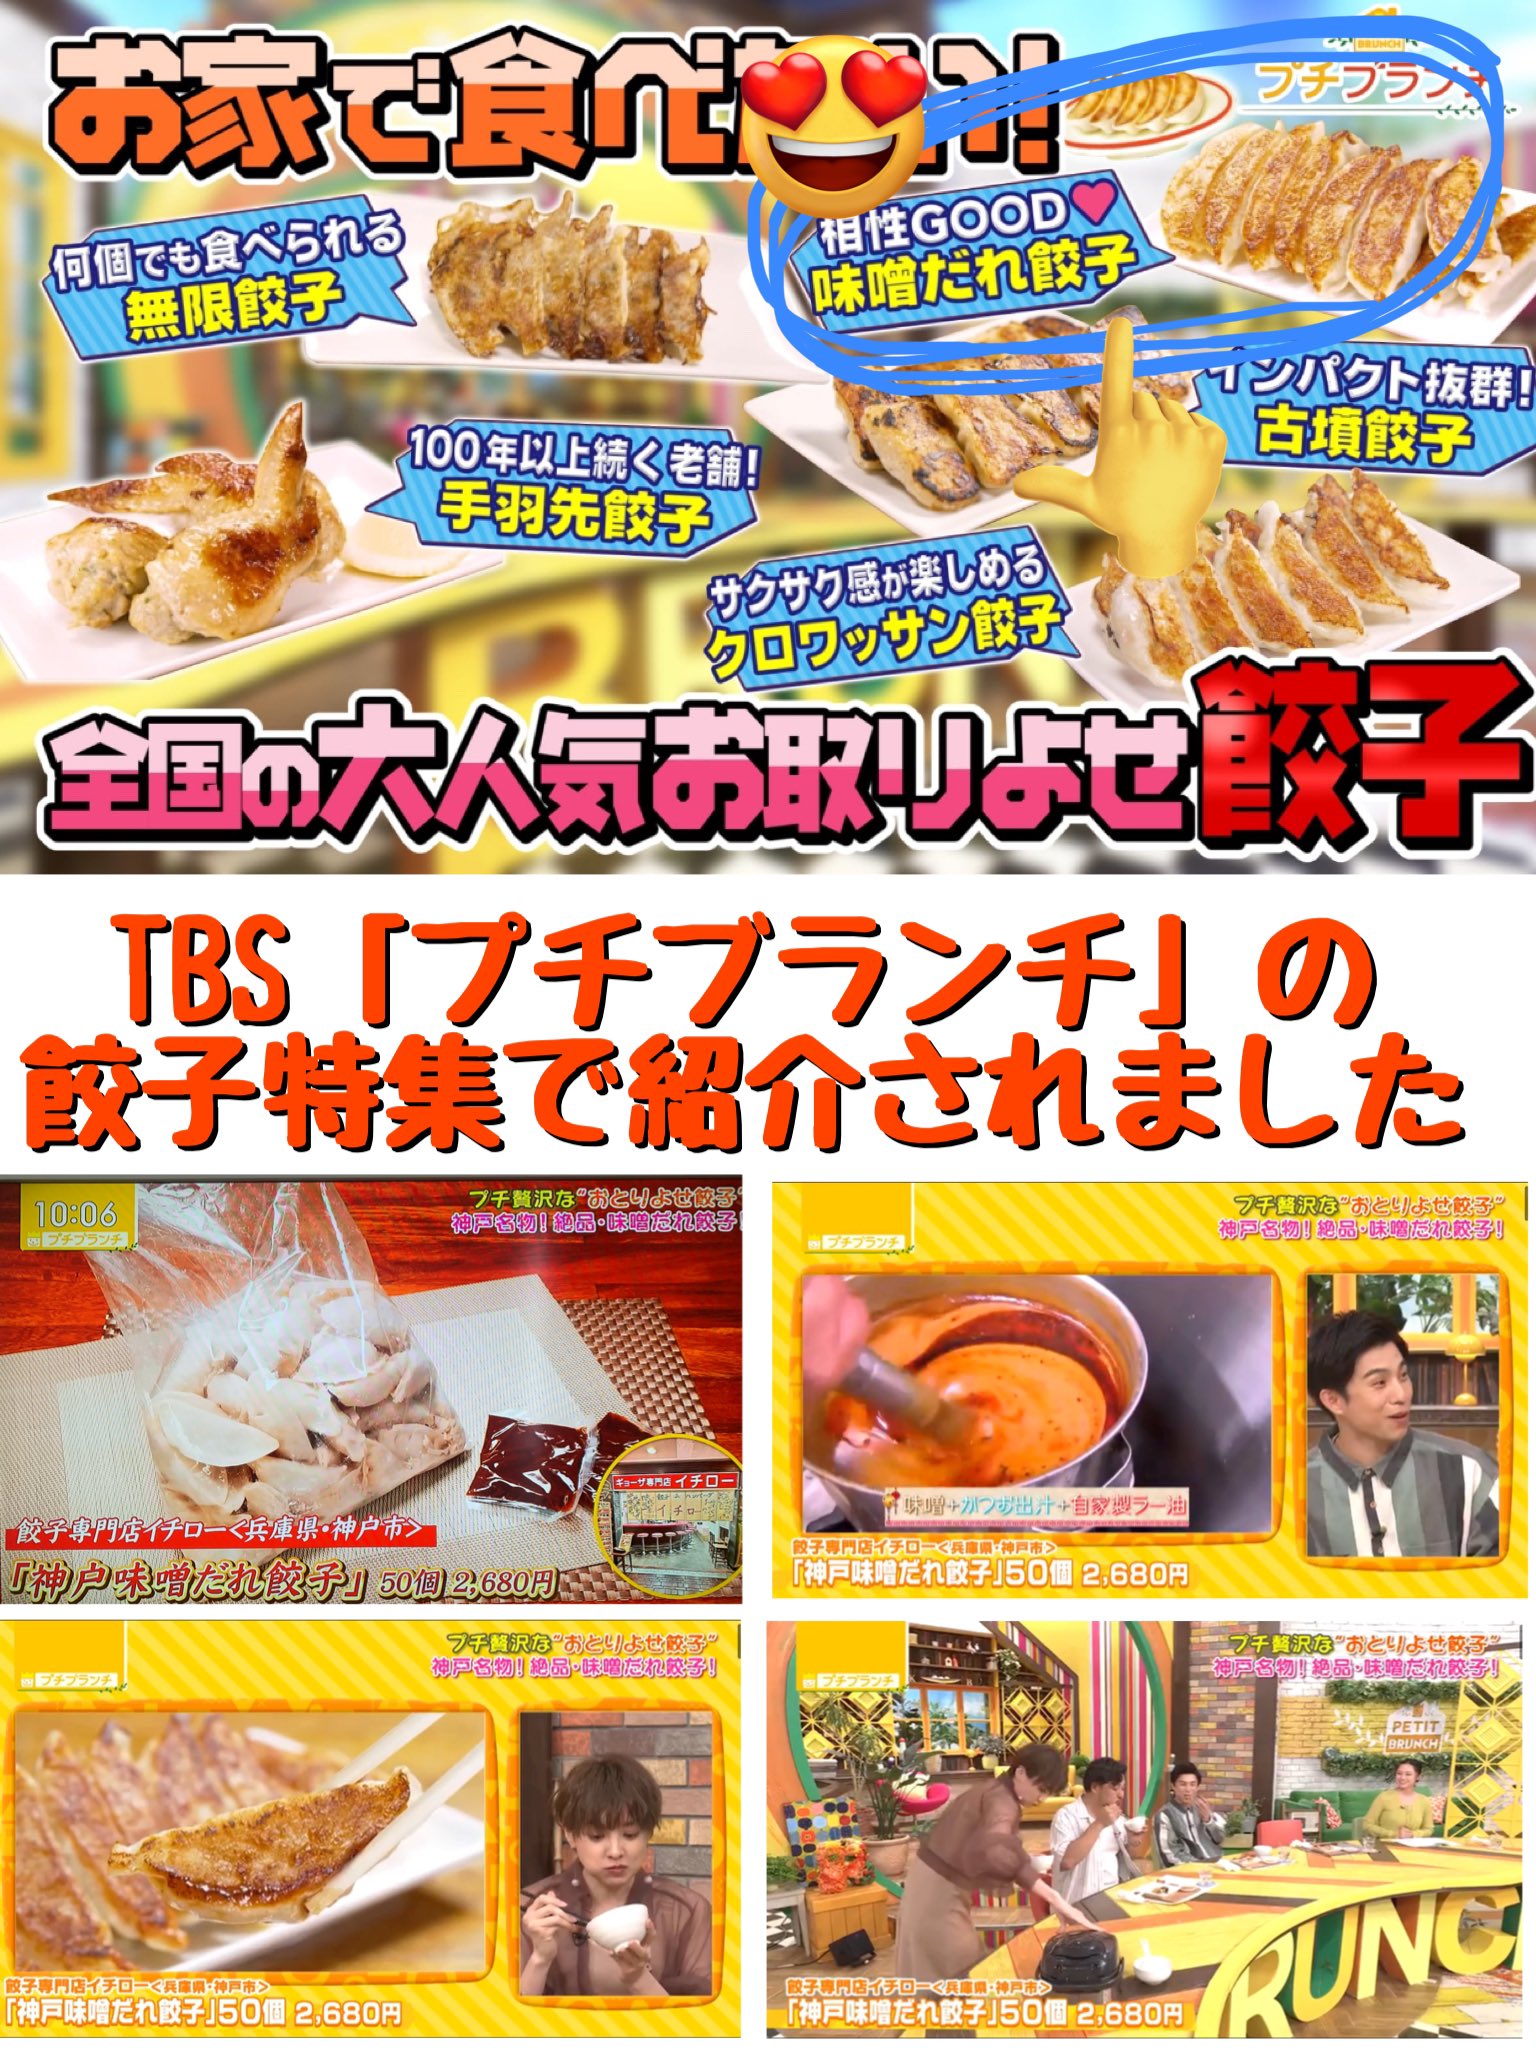 TBS「プチブランチ」で神戸味噌だれ餃子をご紹介いただきました！